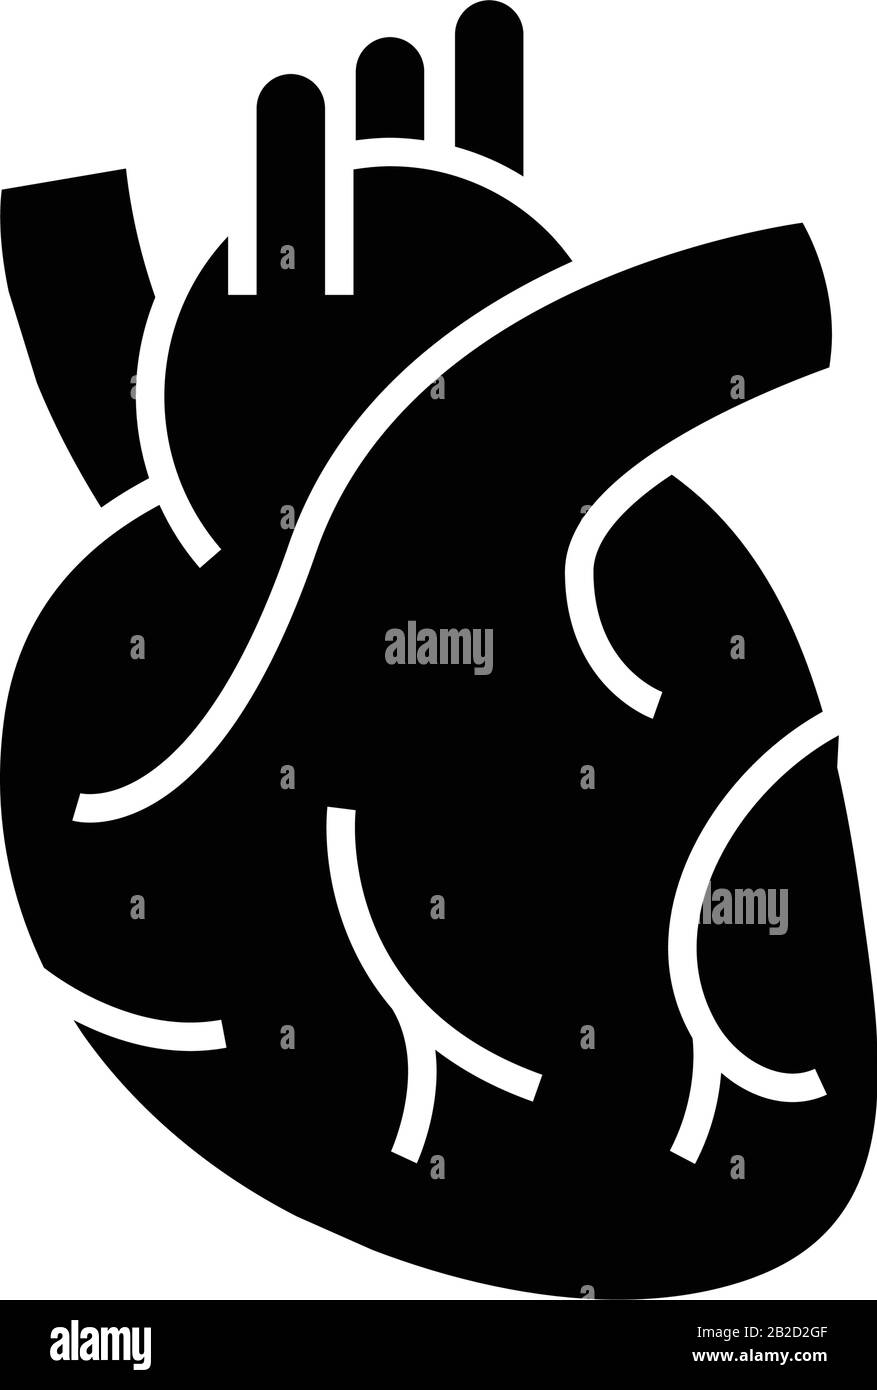 Internes Organ das schwarze Herzsymbol, Konzeptdarstellung, Vektor-Flachsymbol, Glyph-Zeichen. Stock Vektor